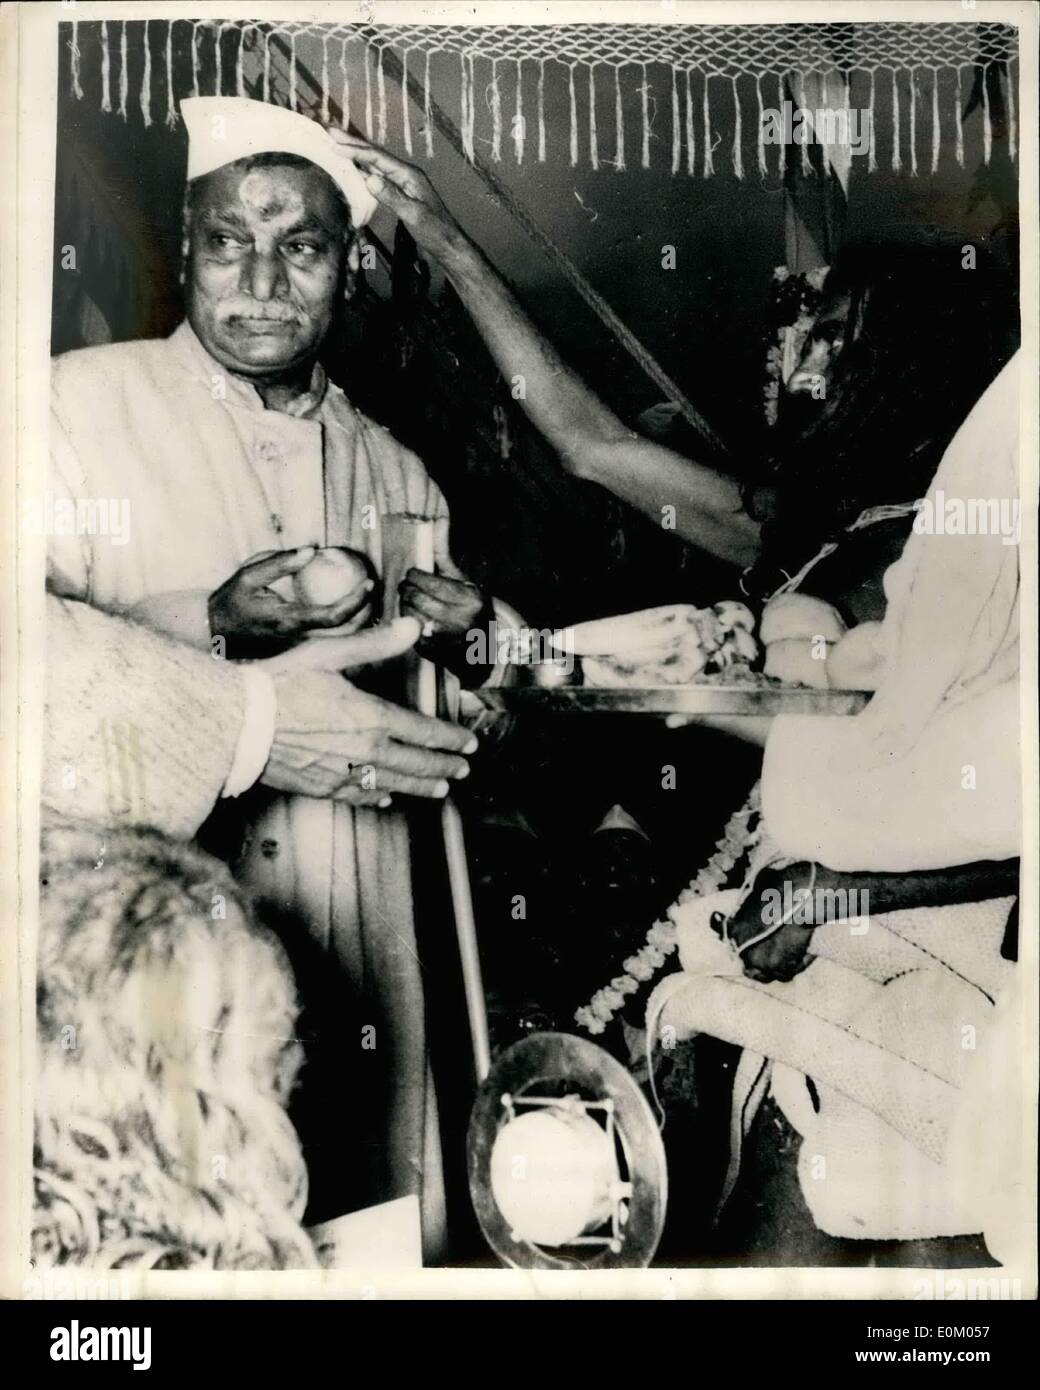 02 février 1953 - Cinq cents pèlerins tués au cours de l'estampillé Kumbh Mela dans le Gange : Au moins 500 pèlerins ont été tués et 2000 blessés récemment où une grande foule s'est à part, et estampillés au Kumbh Mela, un festival religieux qui a eu lieu à la confluence du Gange et Jumna - La cérémonie, qui a normalement lieu tous les 12 ans a été suivi par Dr.Prasad le président de l'Inde et M. pandit Nehru, le premier ministre. Fait une charge de la police lors de procession était bloqué par la foule - et les enfants - handicapés - leapers etc. qui n'ont pas pu se déplacer assez vite - ont été piétinés à mort Banque D'Images